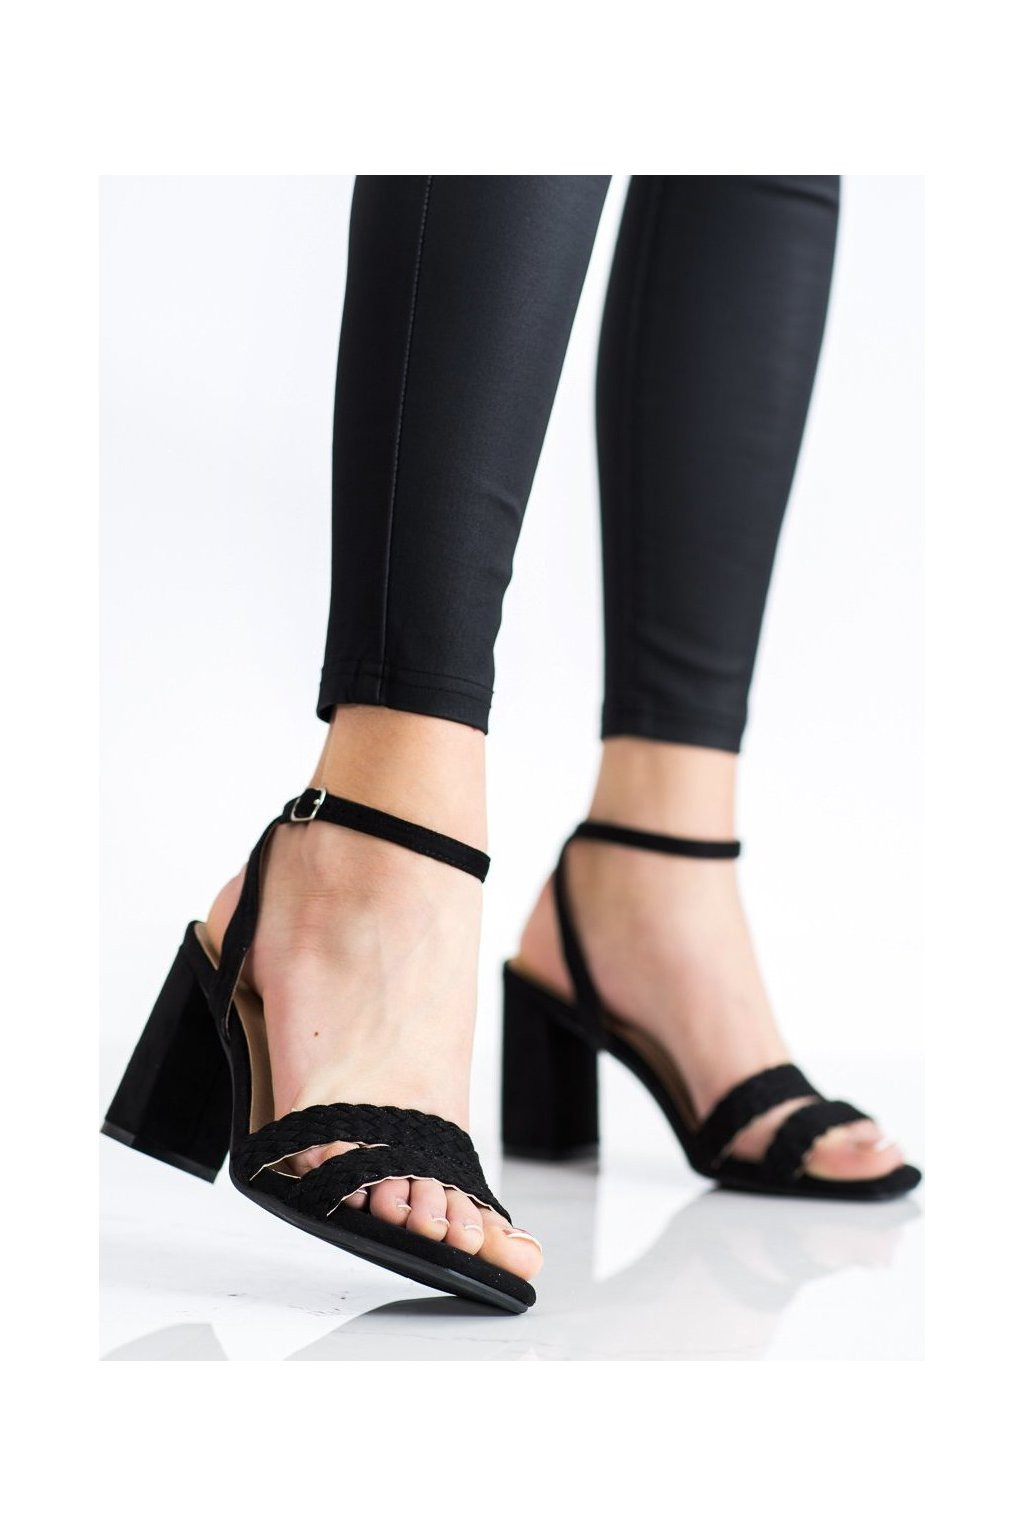 Dámské semišové sandálky na širokém podpatku K2012501NE - Kylie crazy černá 39